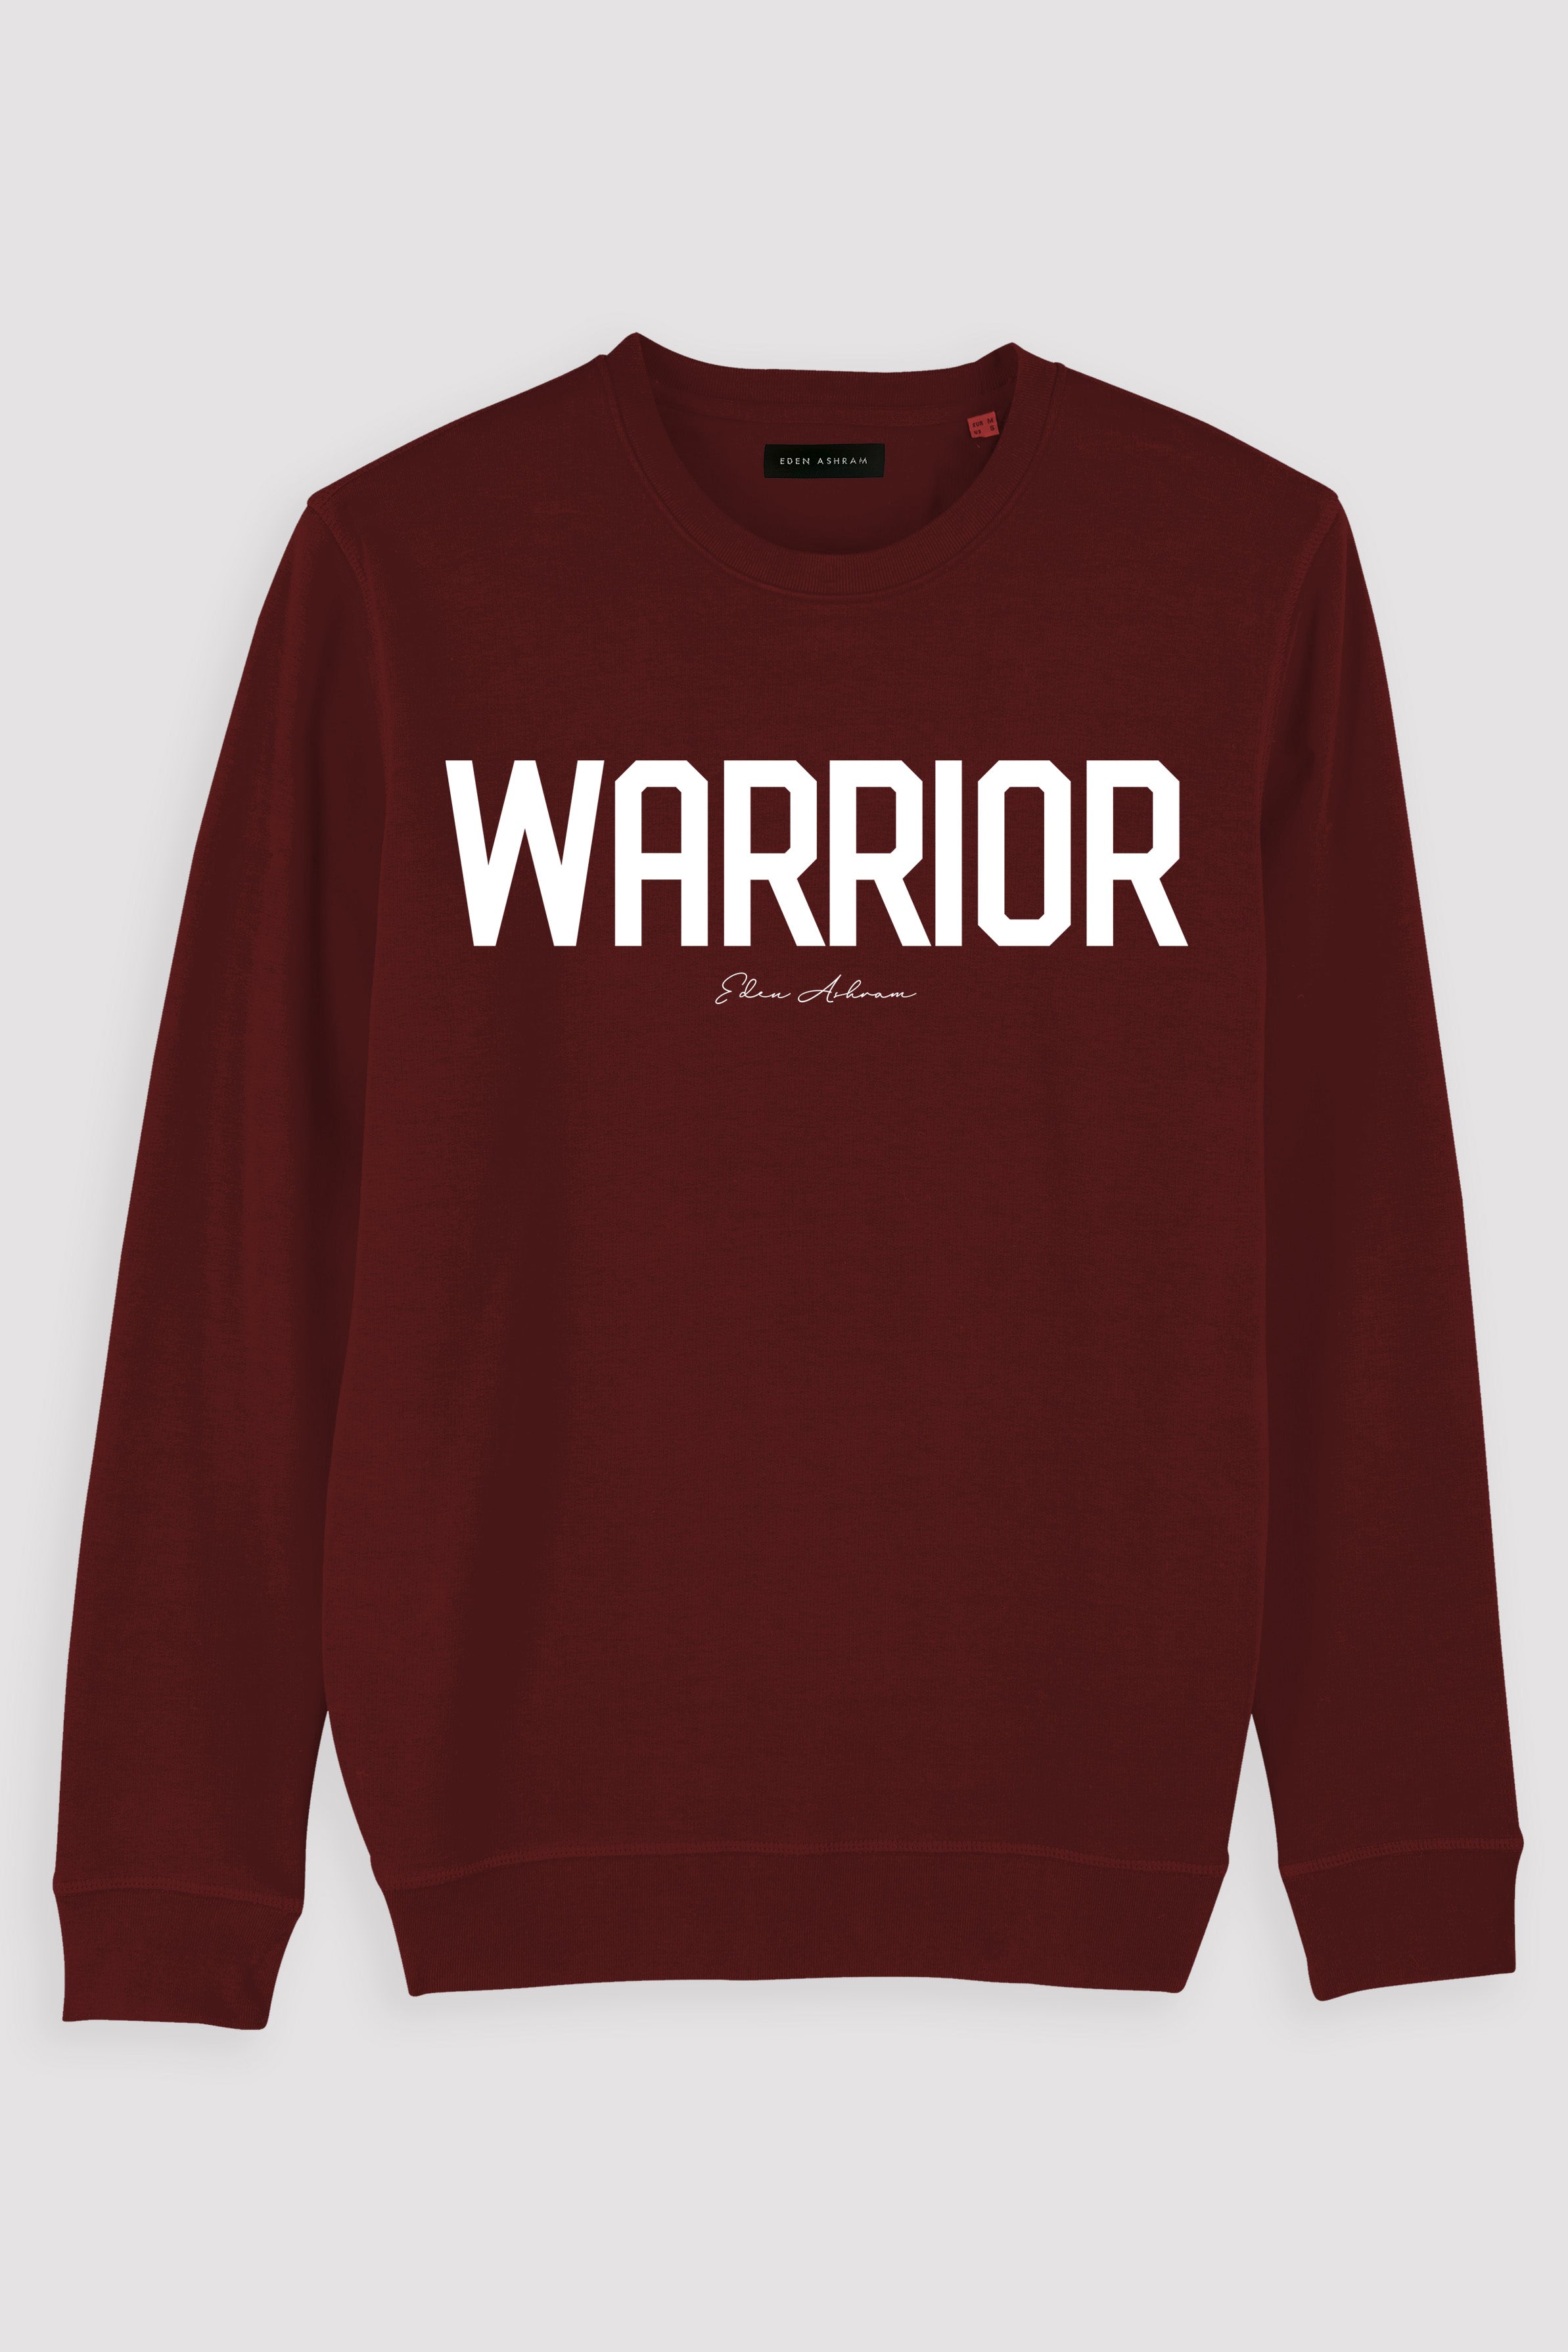 EDEN ASHRAM Warrior Premium Crew Neck Sweatshirt Burgundy